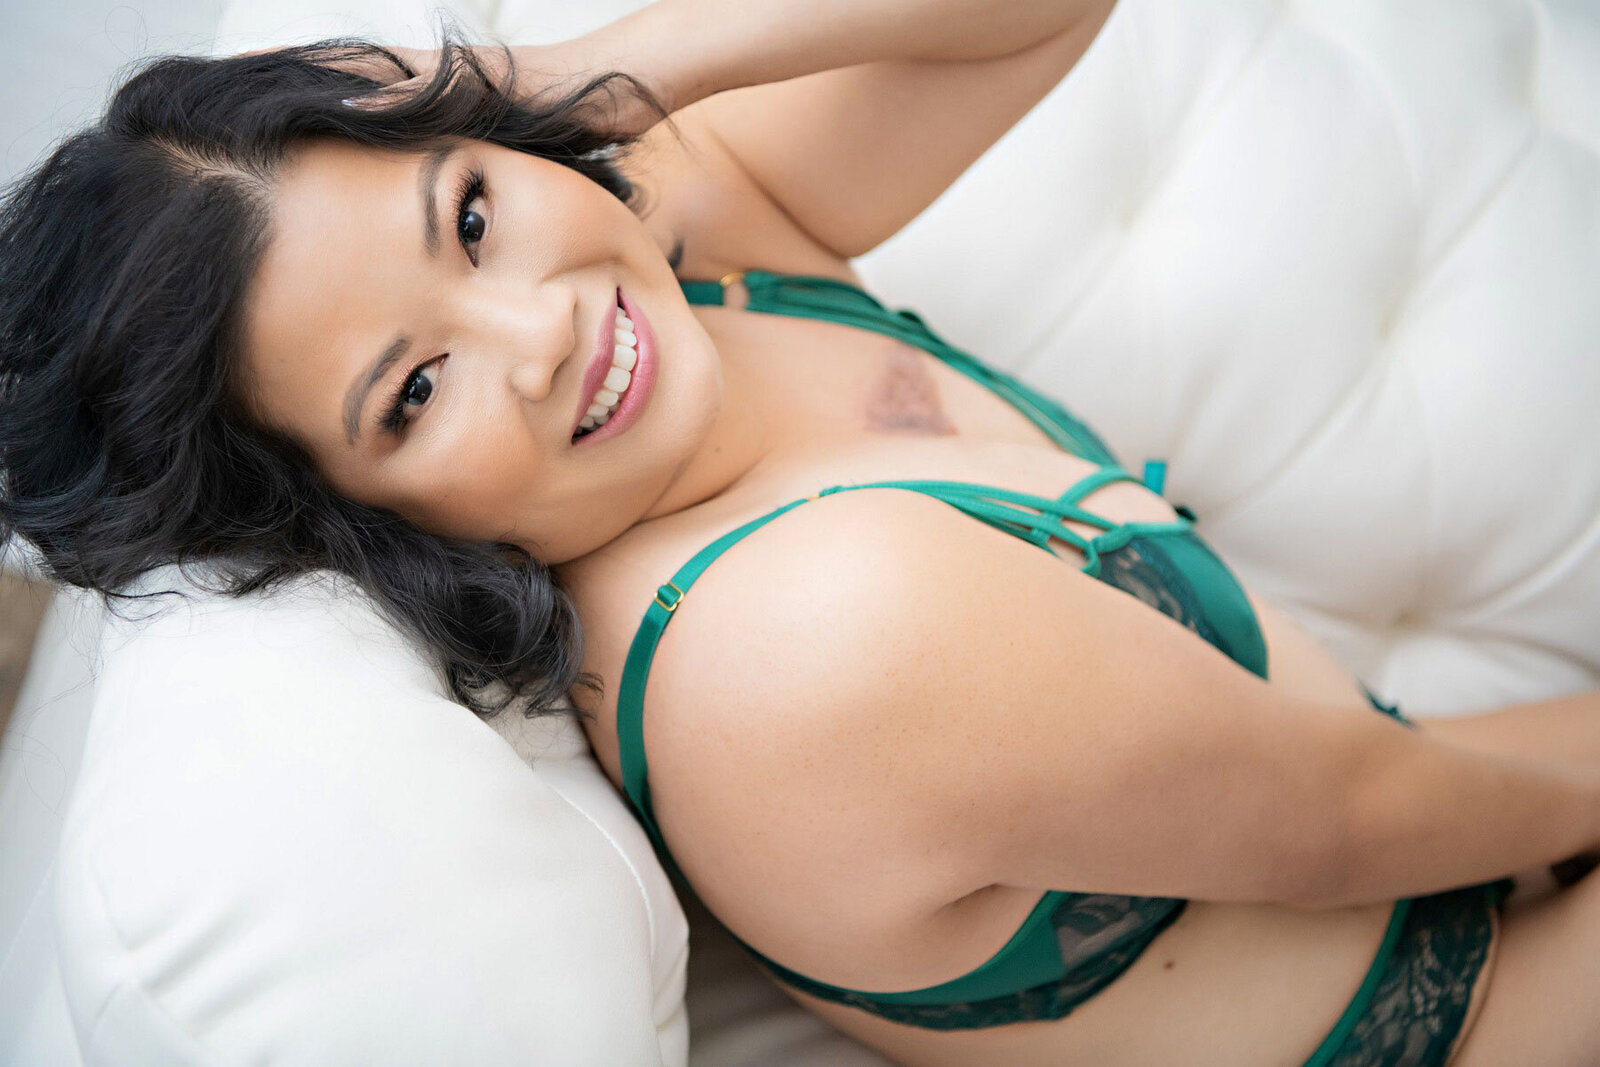 Asian woman in green lingerie set smiling in boudoir portrait